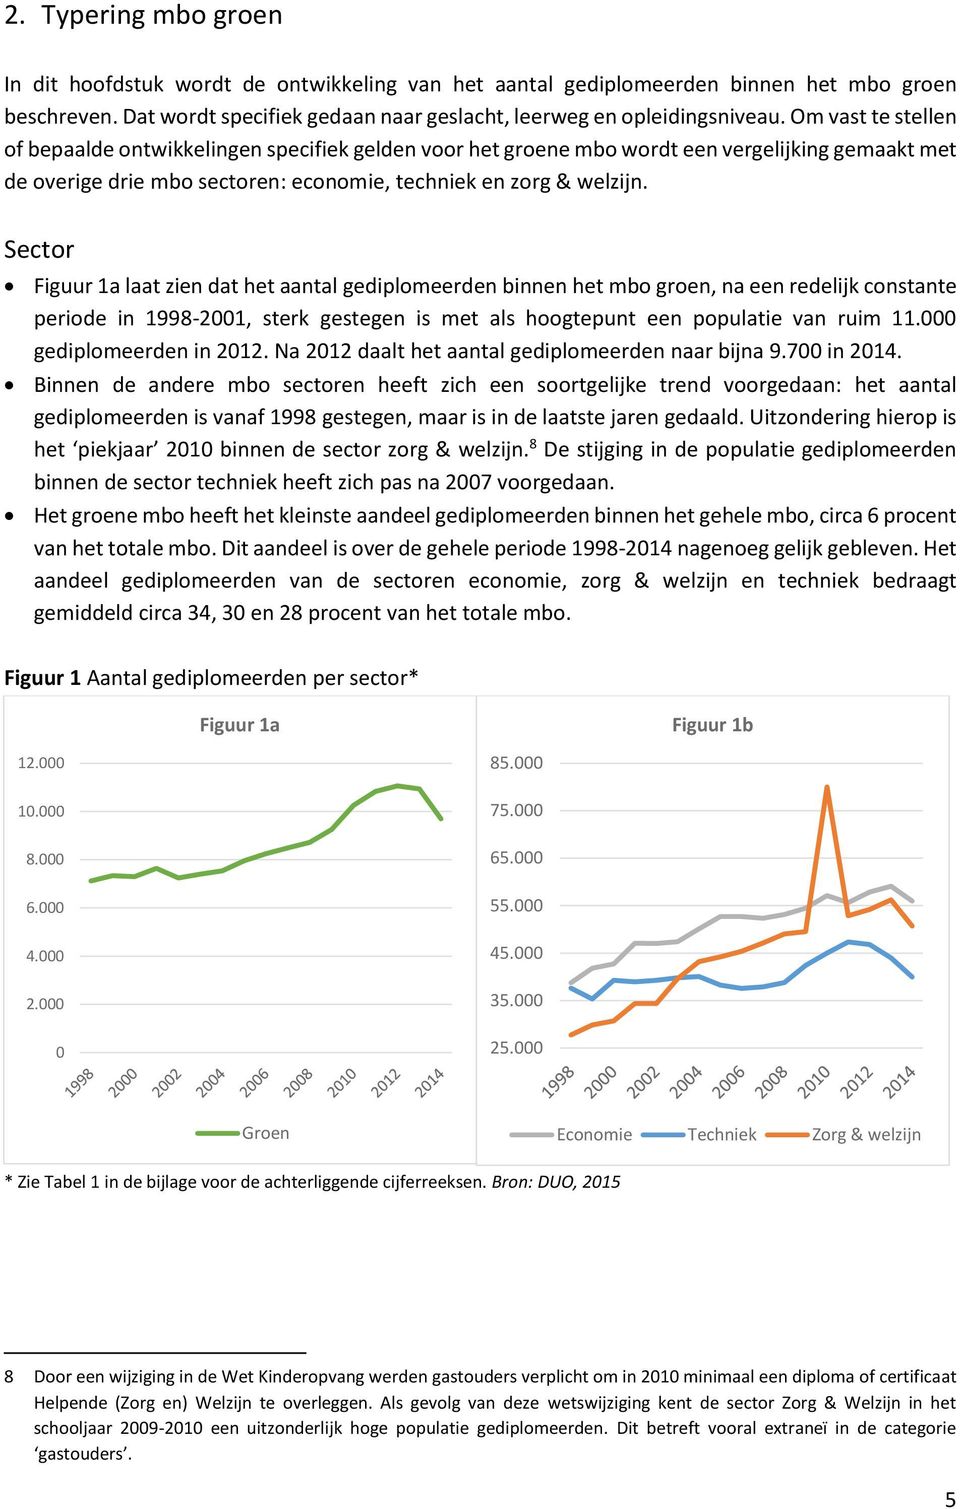 Sector Figuur 1a laat zien dat het aantal gediplomeerden binnen het mbo groen, na een redelijk constante periode in 1998-2001, sterk gestegen is met als hoogtepunt een populatie van ruim 11.